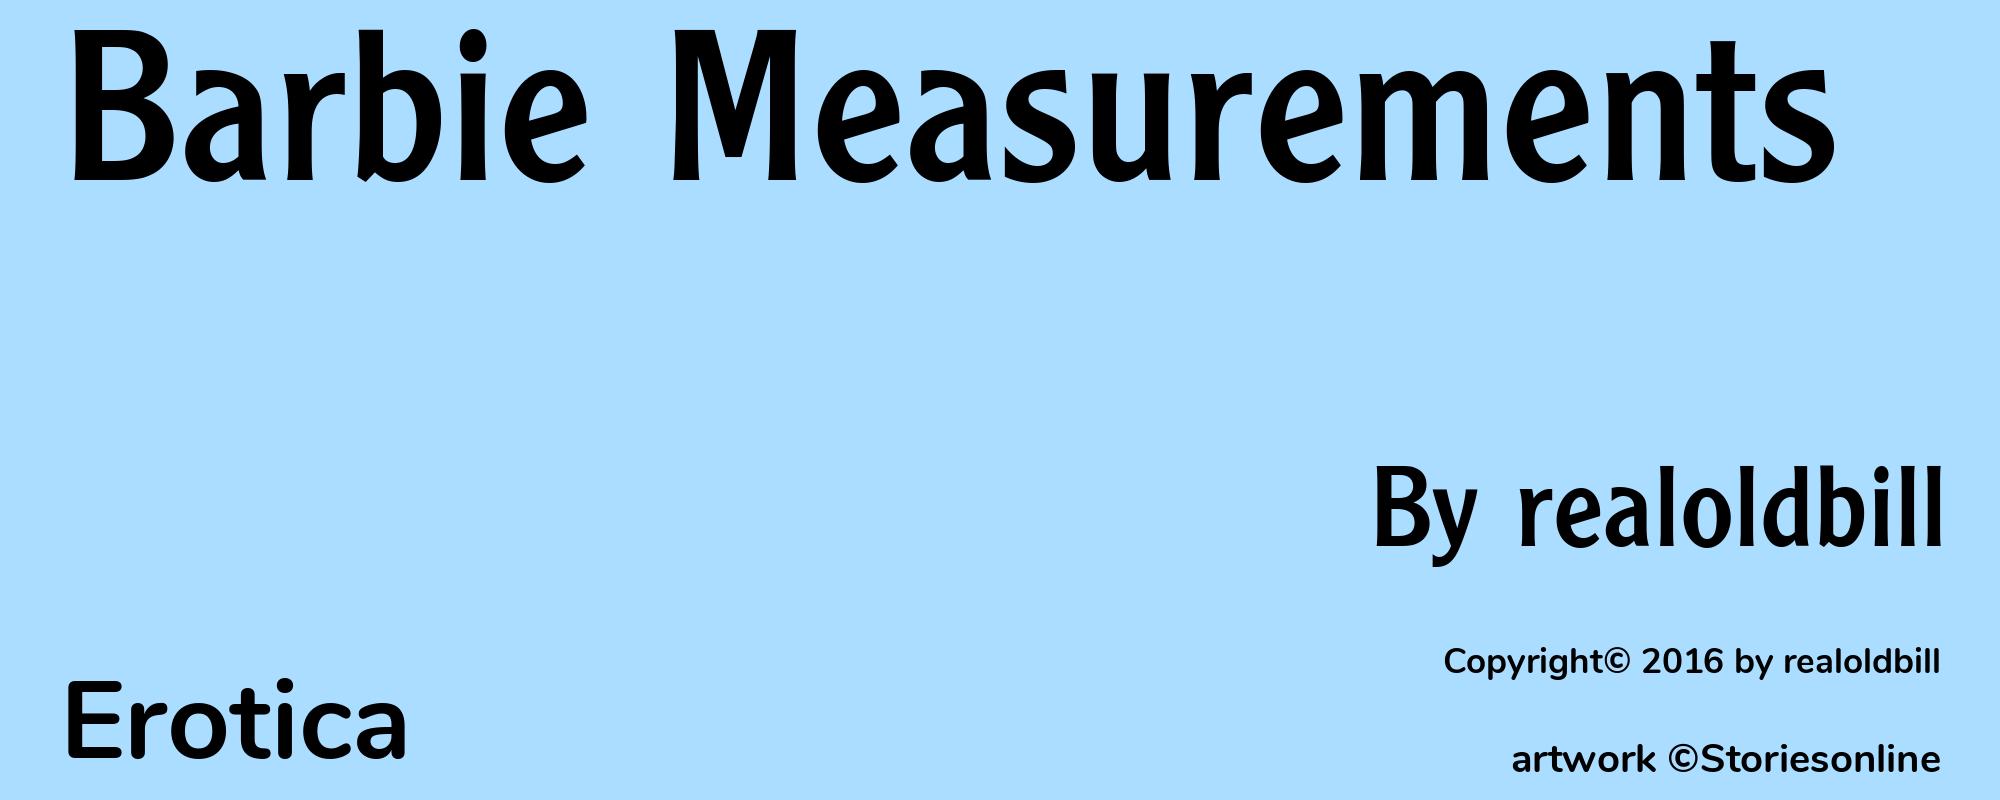 Barbie Measurements - Cover